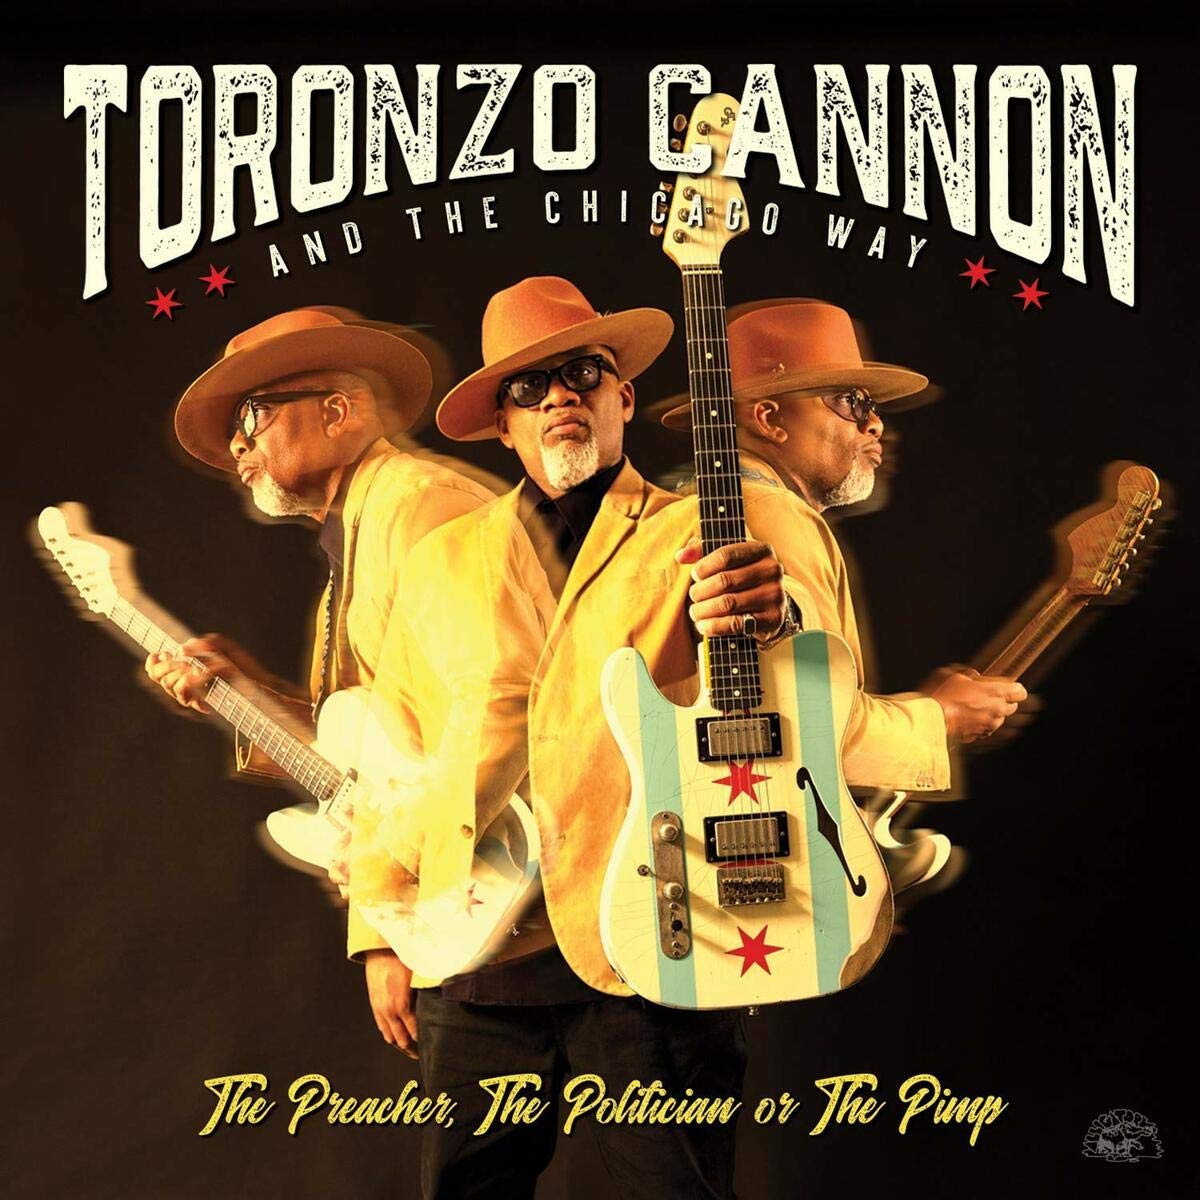 TORONZO CANNON – The preacher, the politician or the pimp